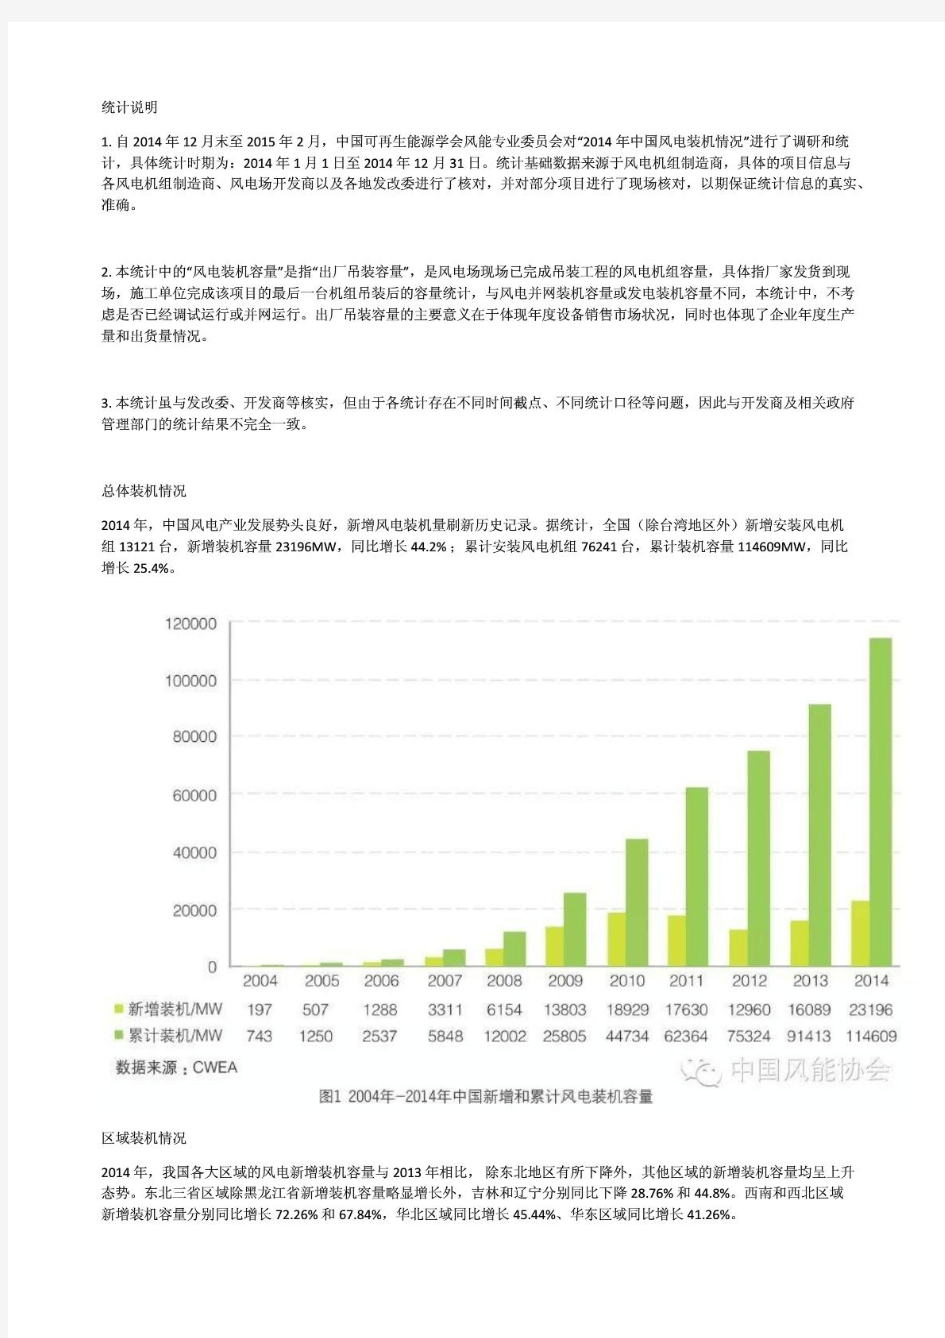 2014年中国风电装机容量统计完整版